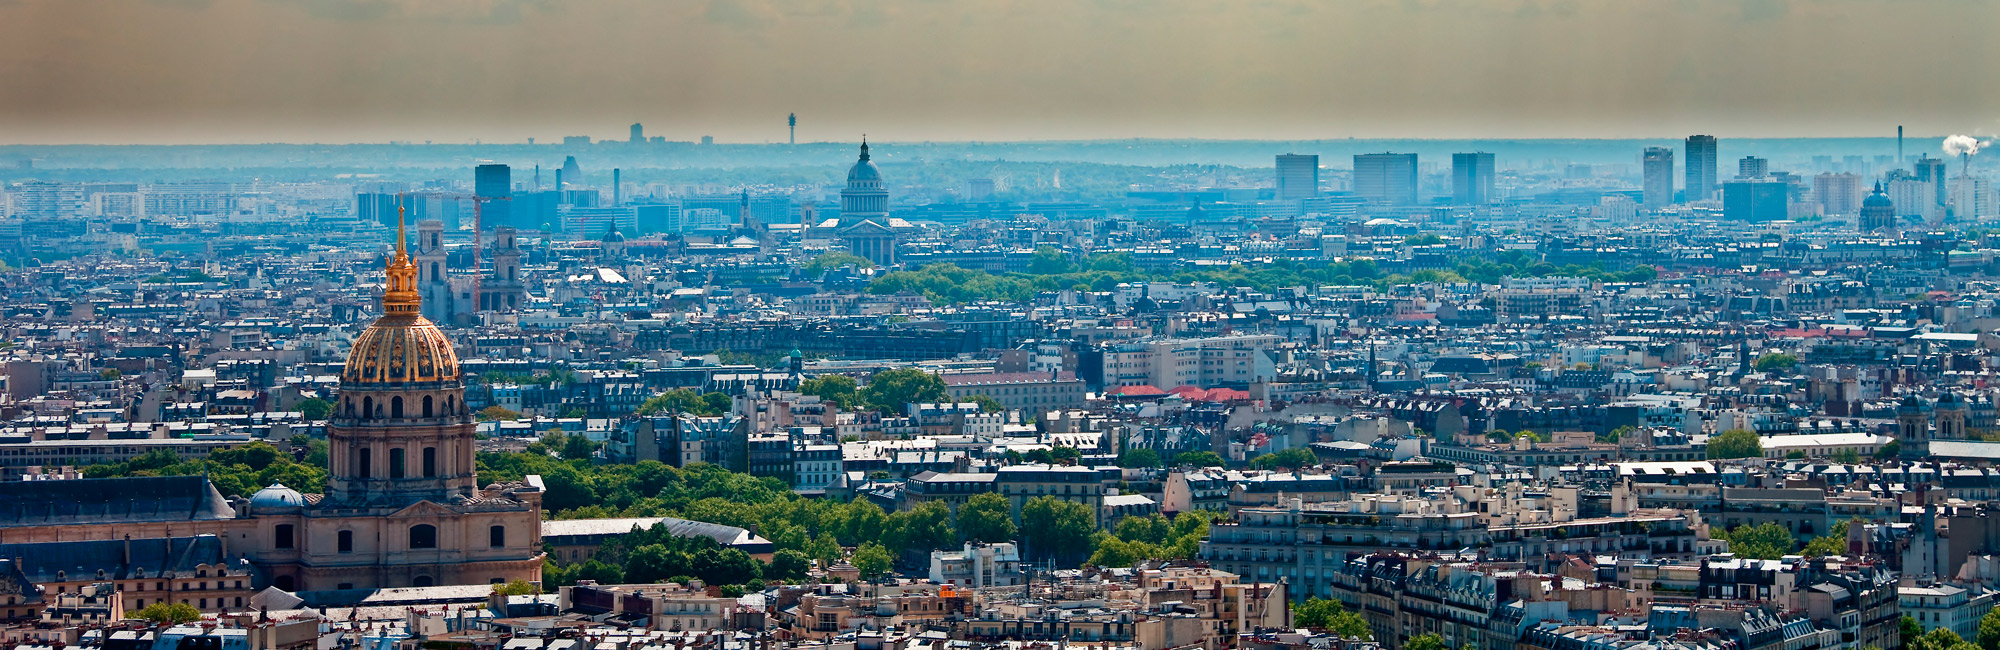 París ha llegado a imponer severas restricciones de tráfico por episodios de contaminación (Gtresonline)